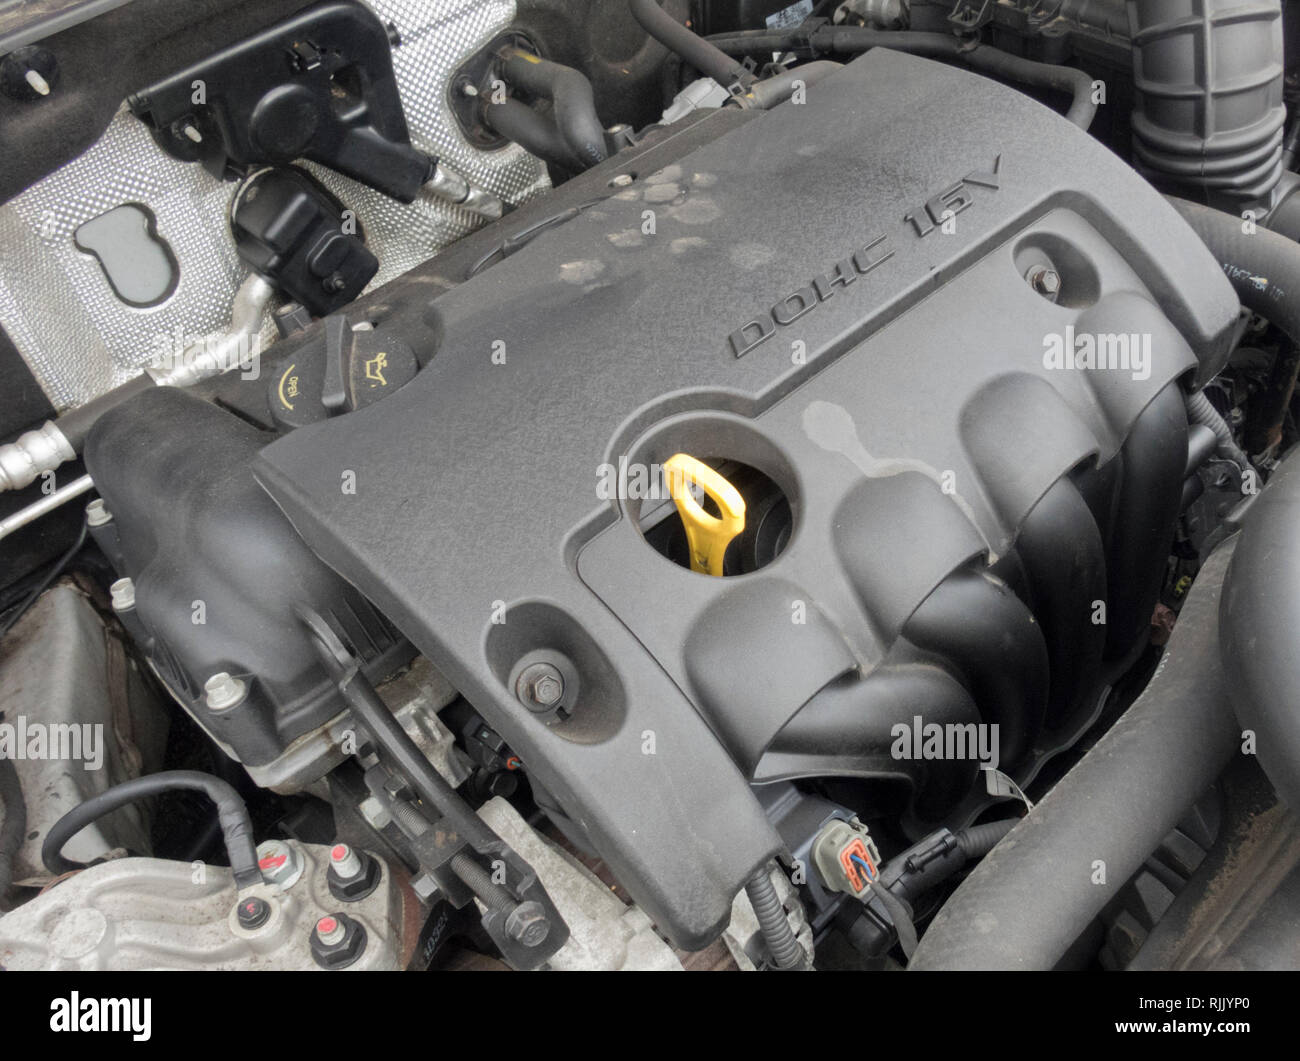 Hyundai 1.6 litre Petrol DOHC 16v Petrol Car Engine ( Euro 5 compliant ) Stock Photo